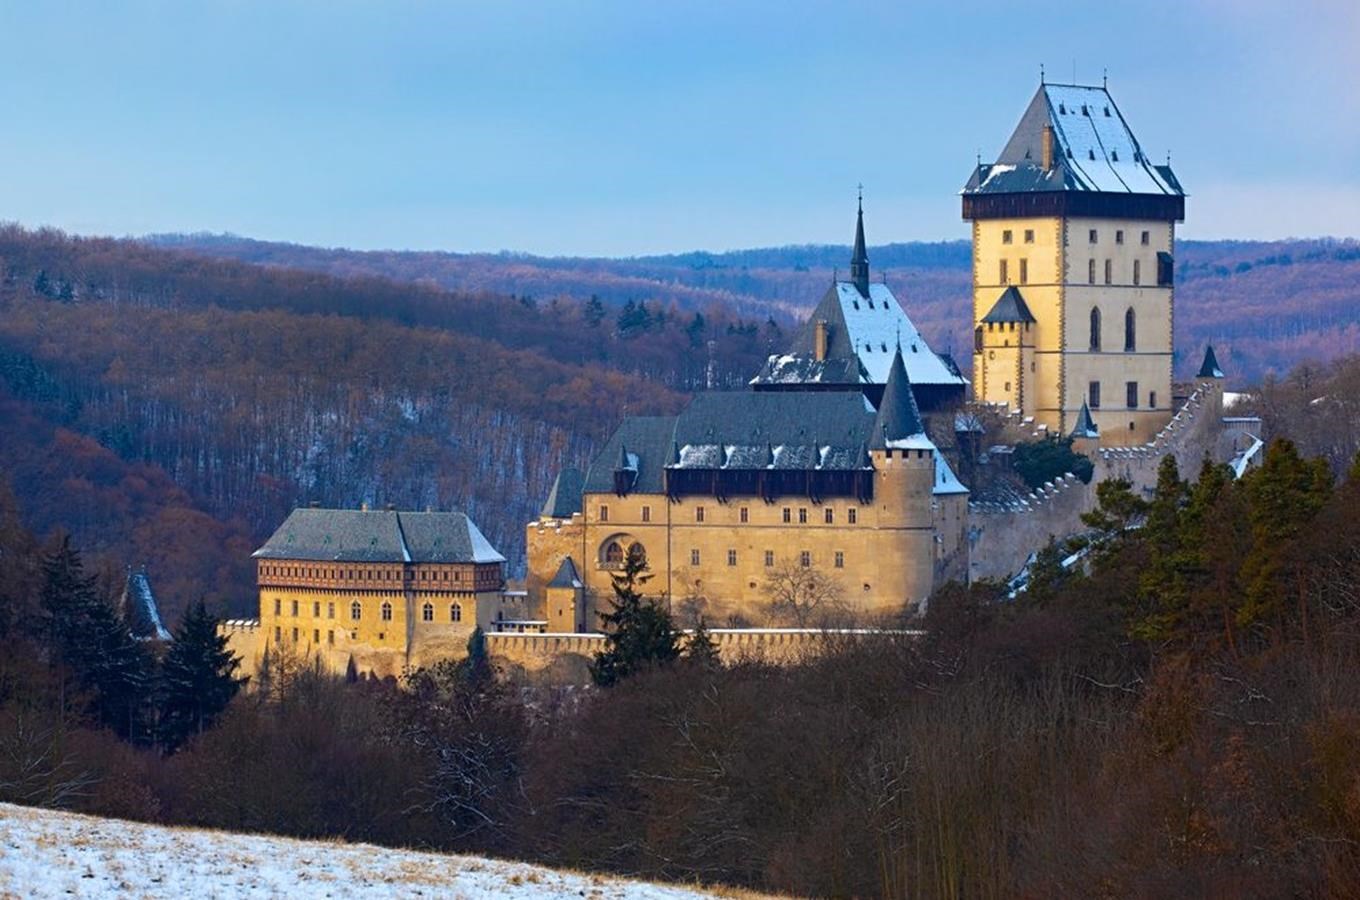 Hrad Karlštejn zve na zimní prohlídky i adventní akce